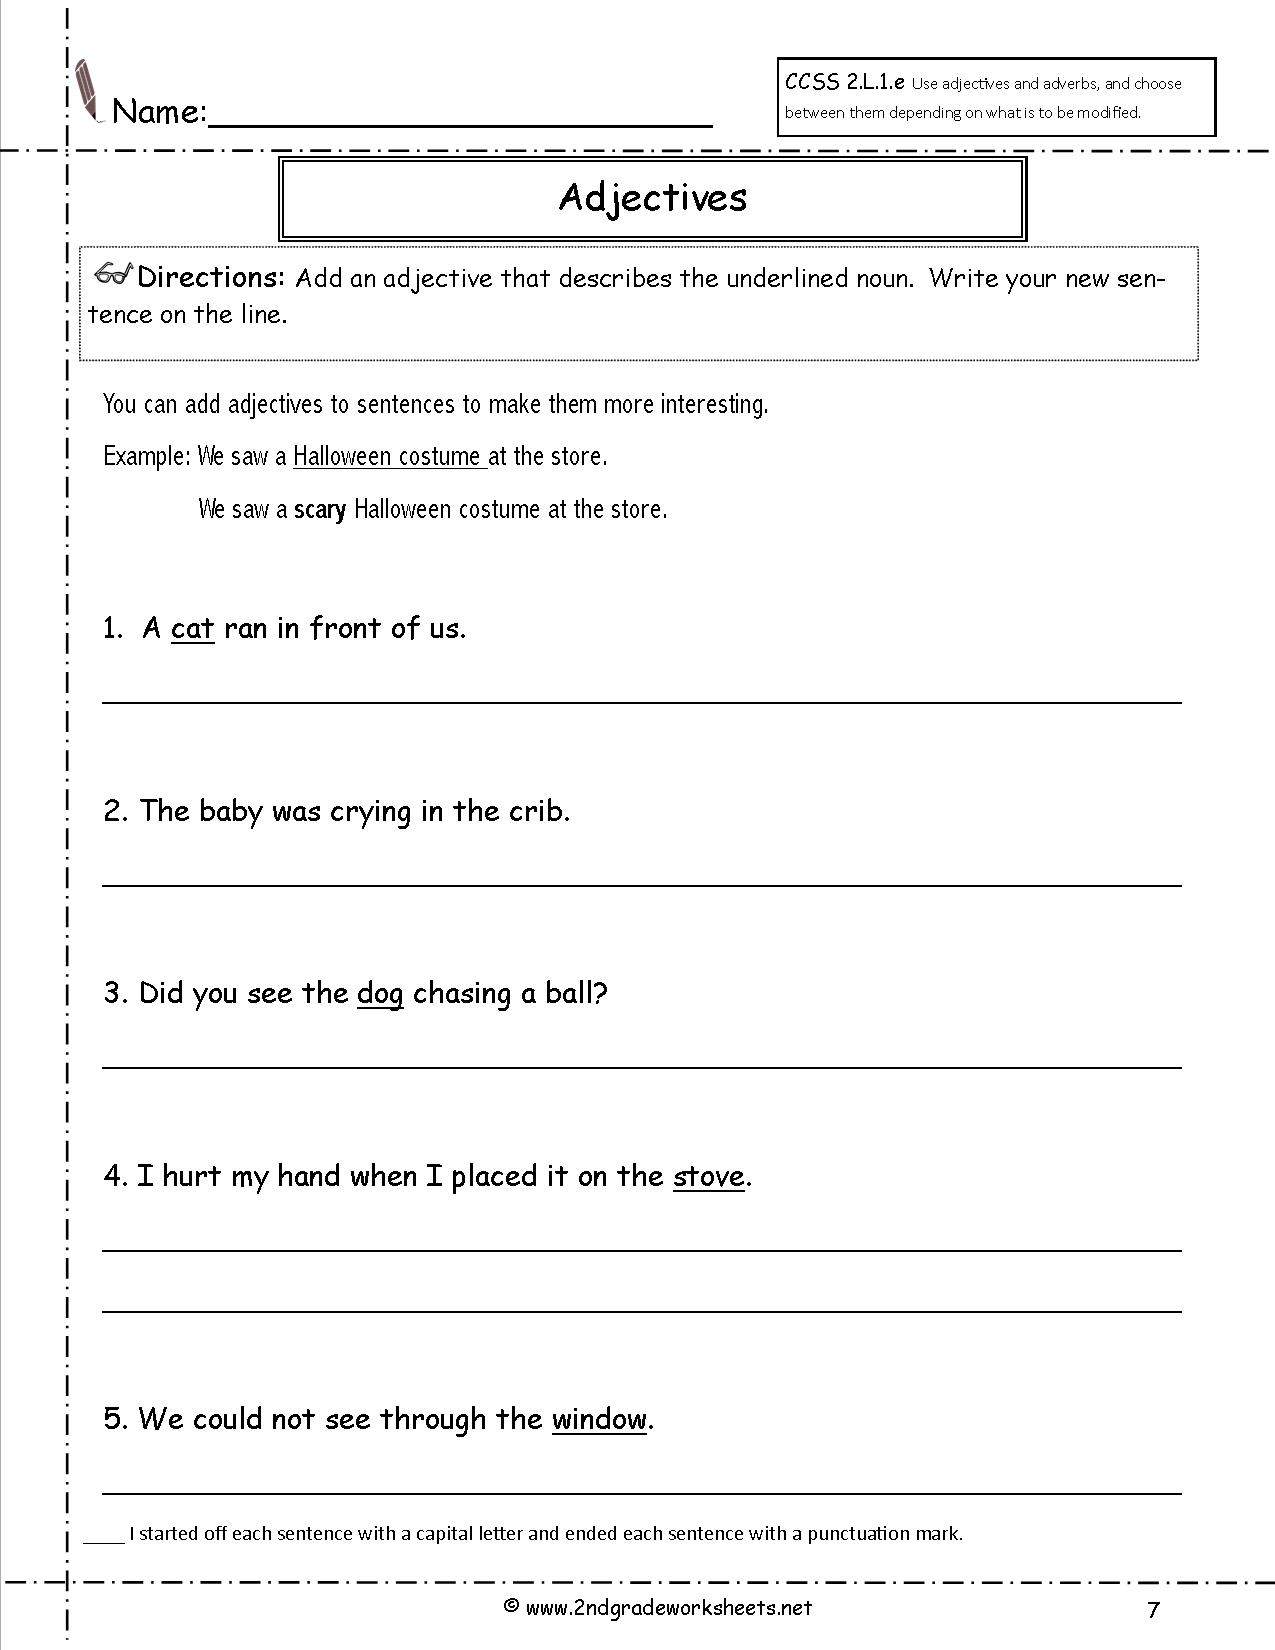 worksheets-on-adjectives-grade-3-i-english-key2practice-workbooks